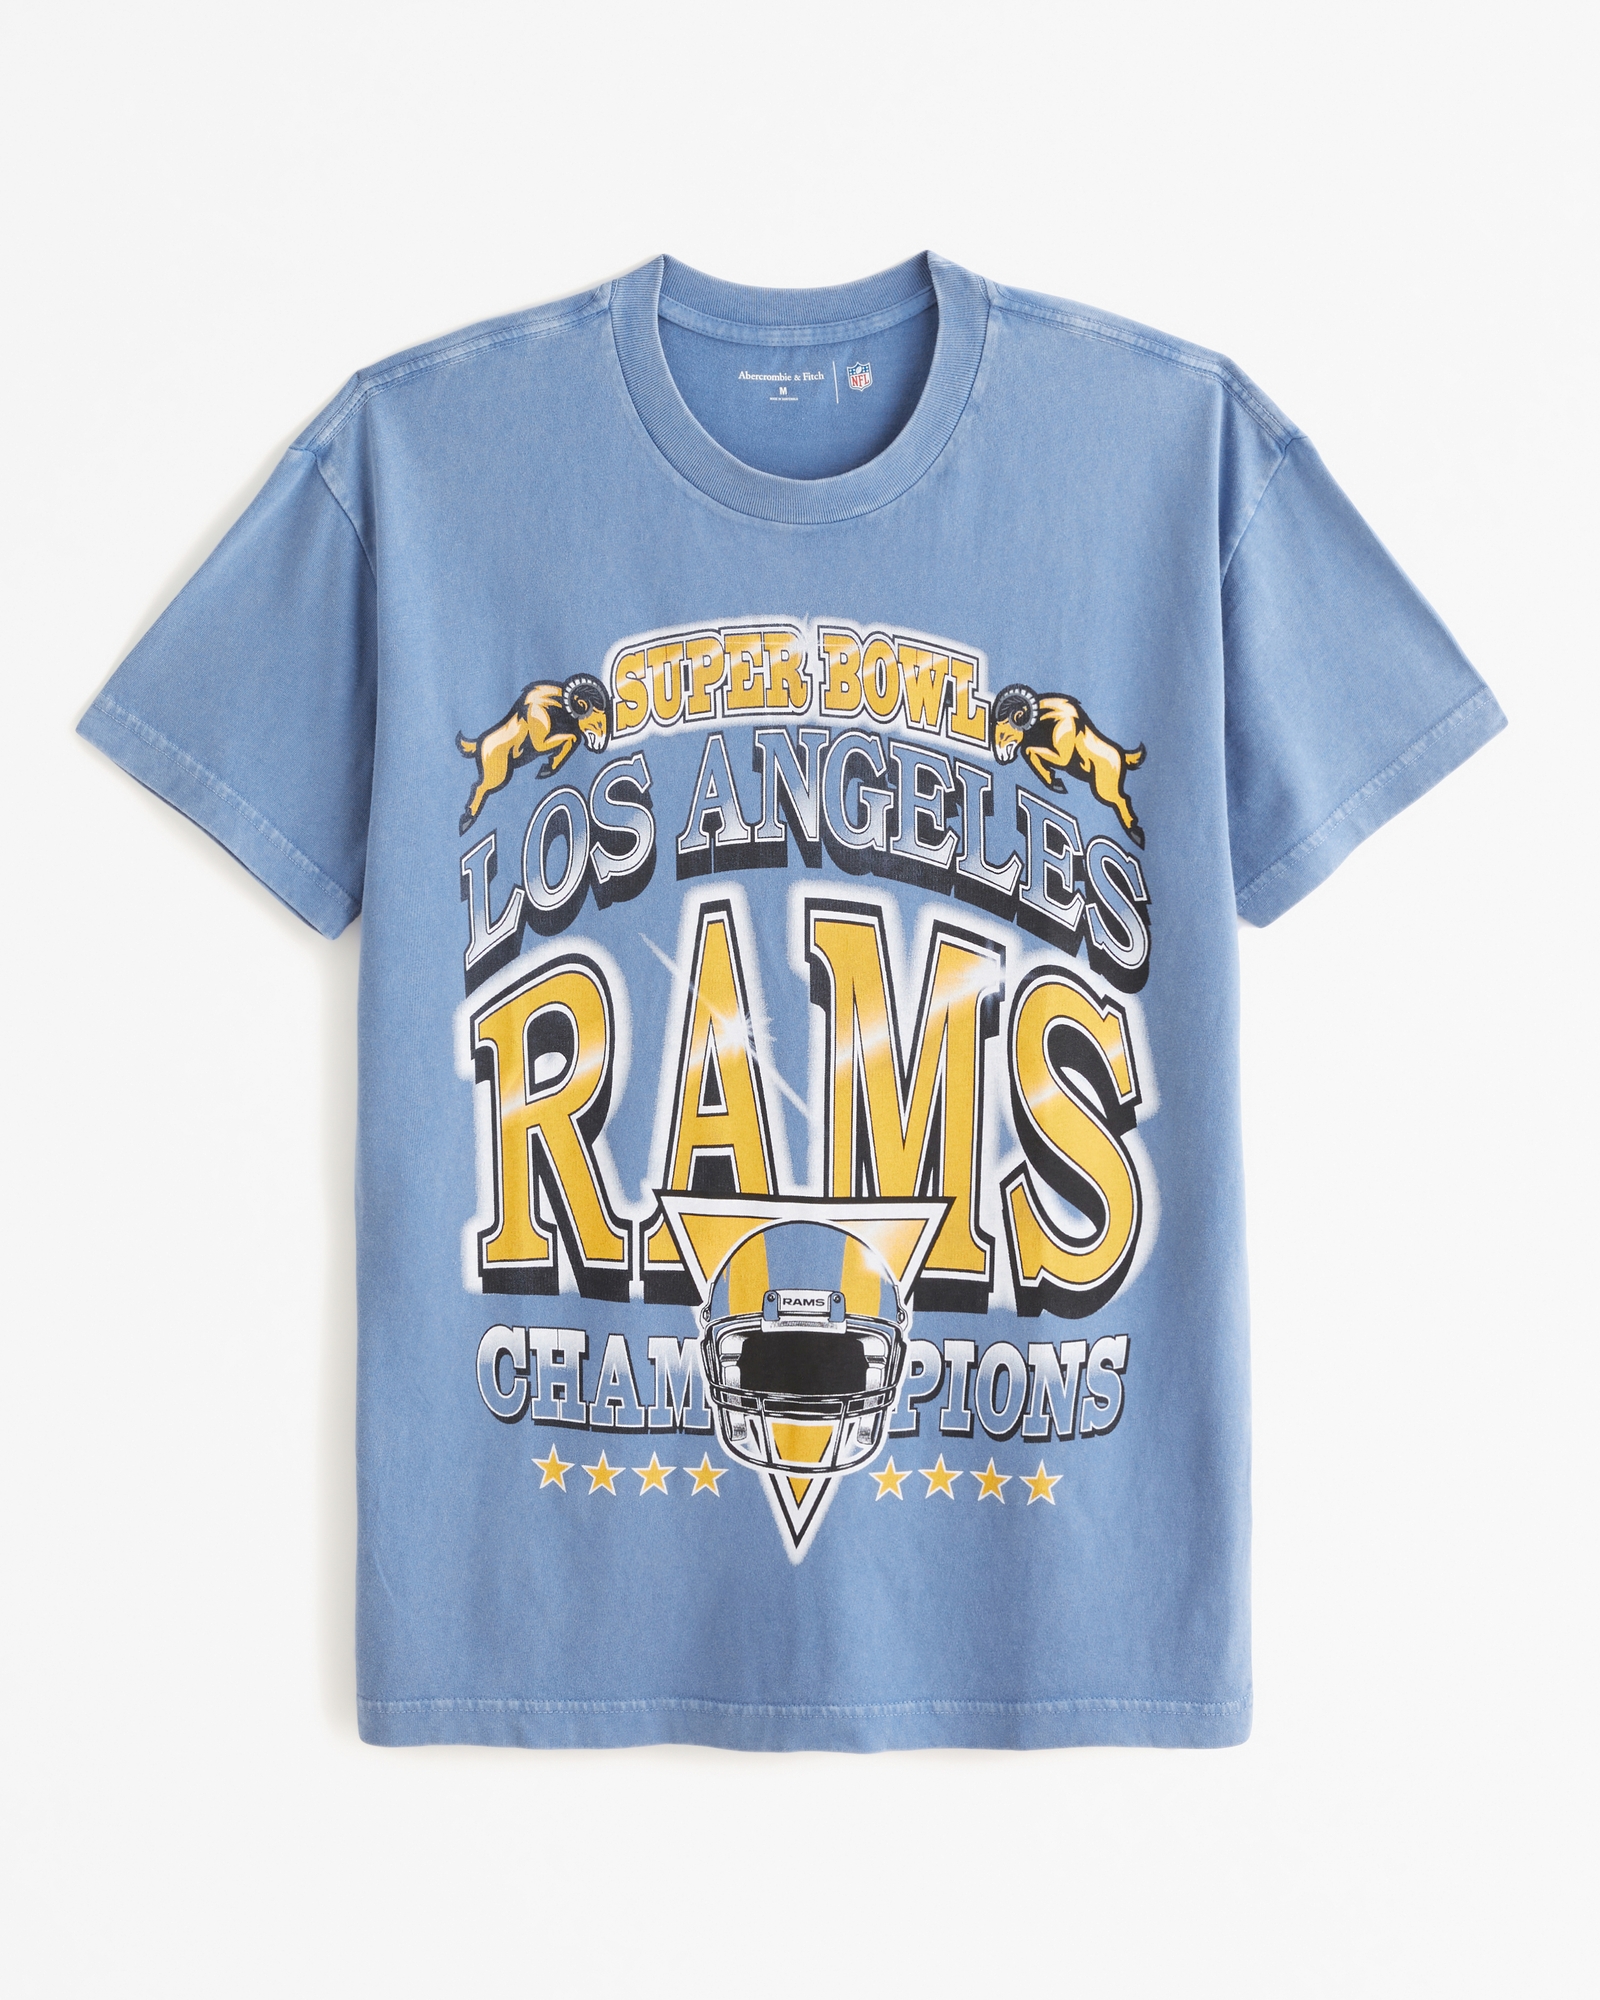 Los Angeles Rams Vintage Collection, Rams Retro Apparel